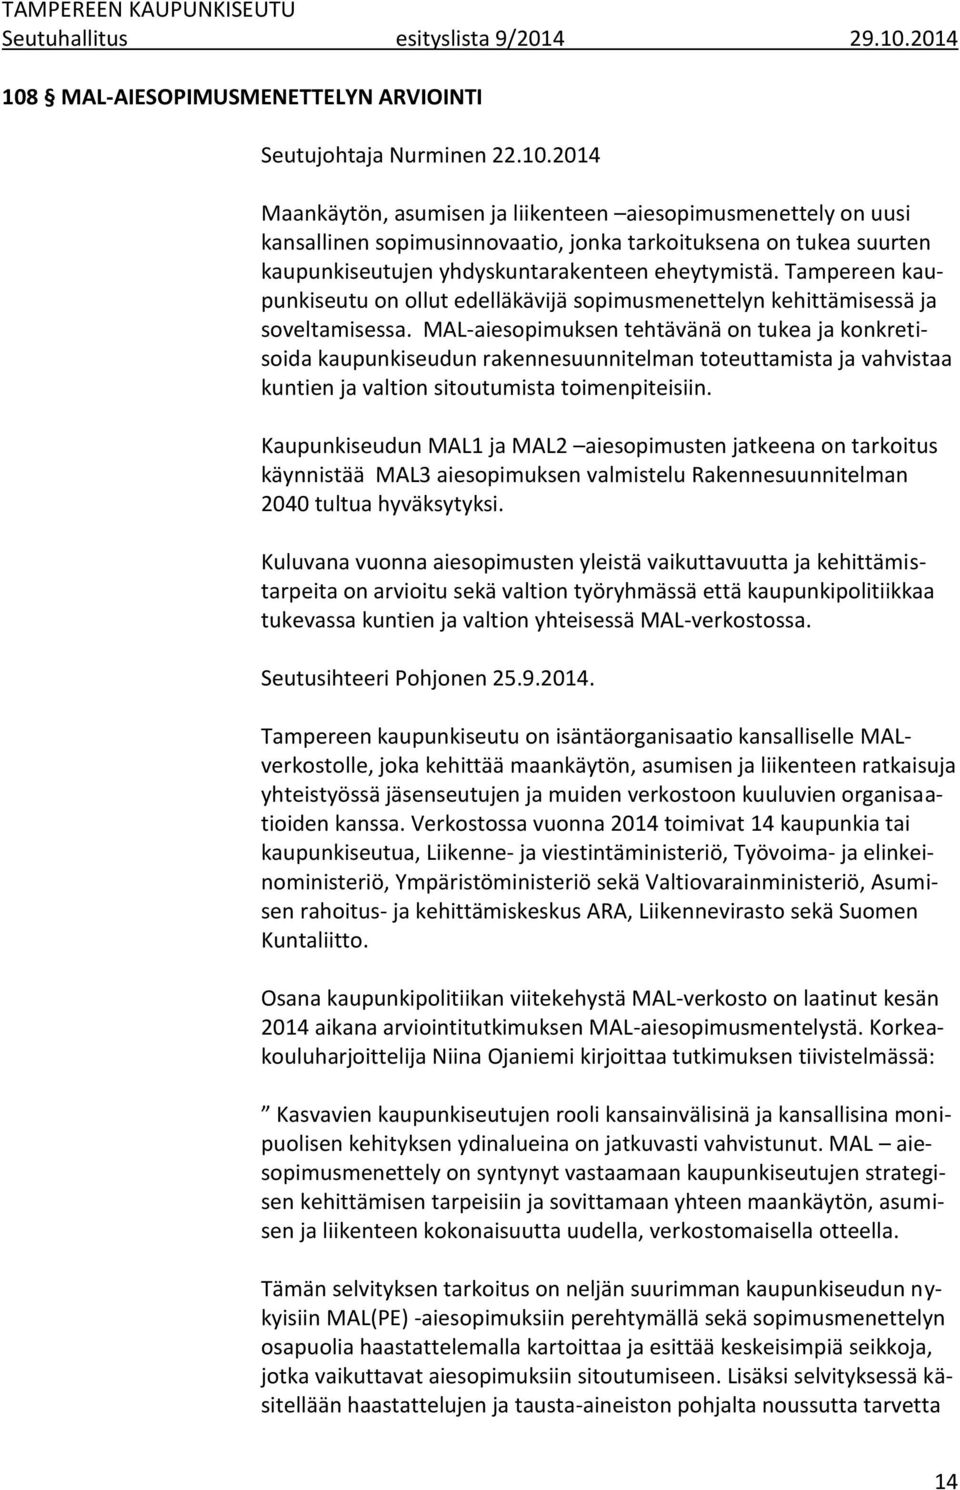 Tampereen kaupunkiseutu on ollut edelläkävijä sopimusmenettelyn kehittämisessä ja soveltamisessa.